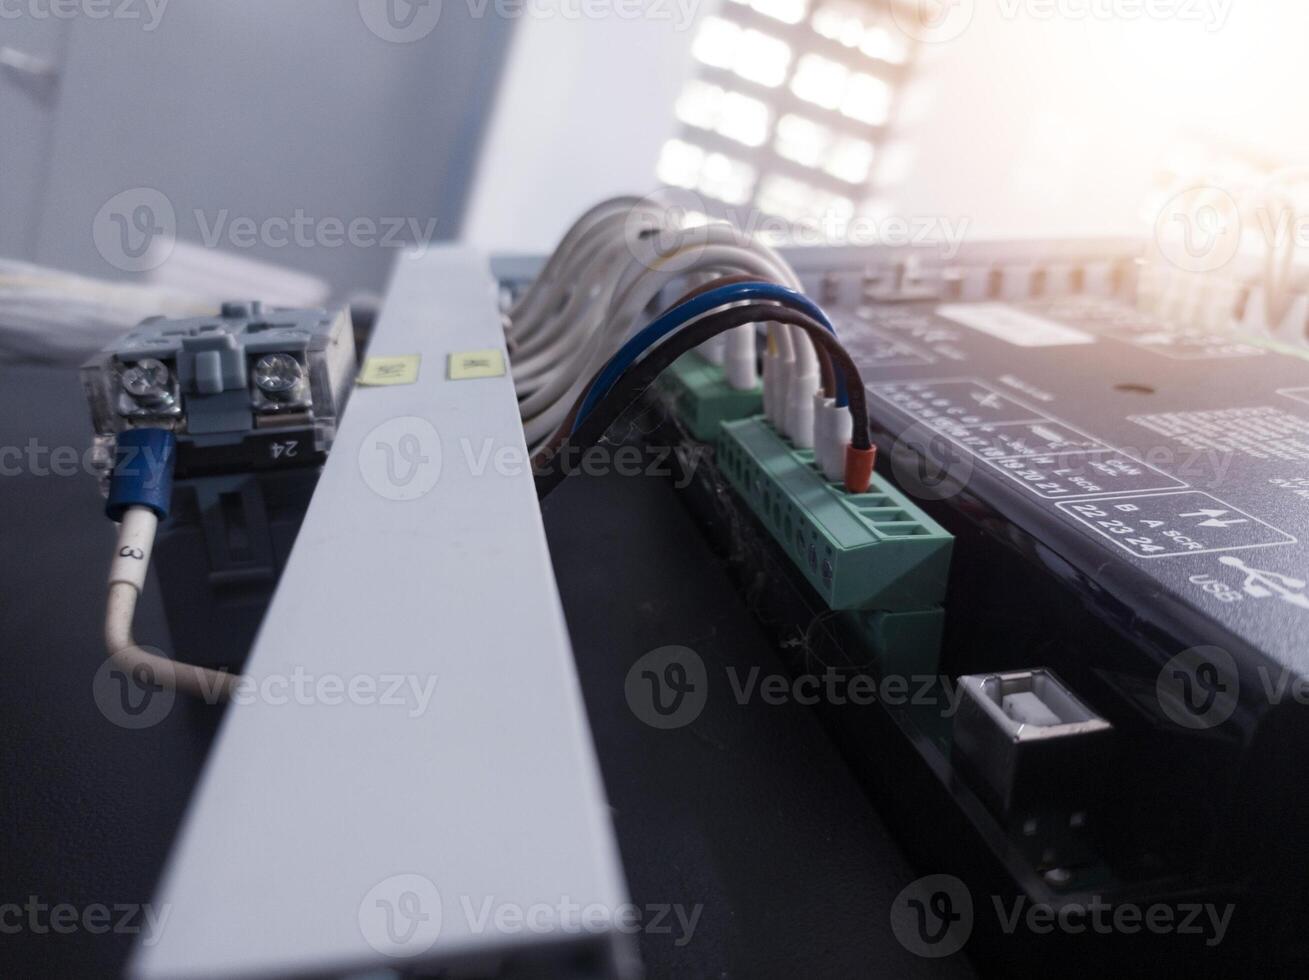 installatie terminals verbinding module controle Scherm toezicht houden voor generator macht fabriek. foto